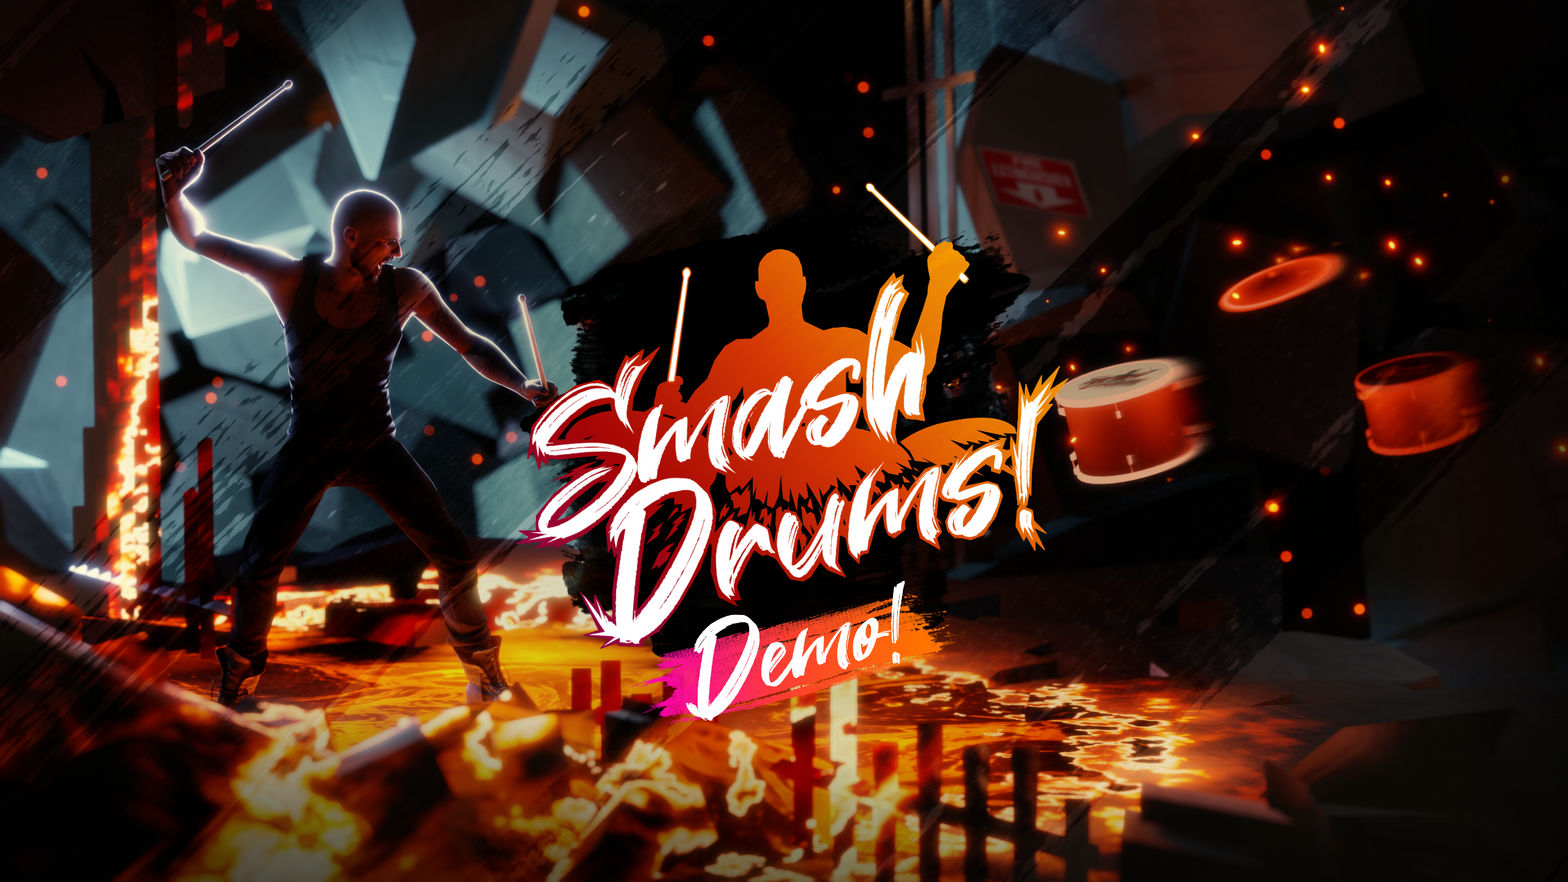 Smash Drums Demo